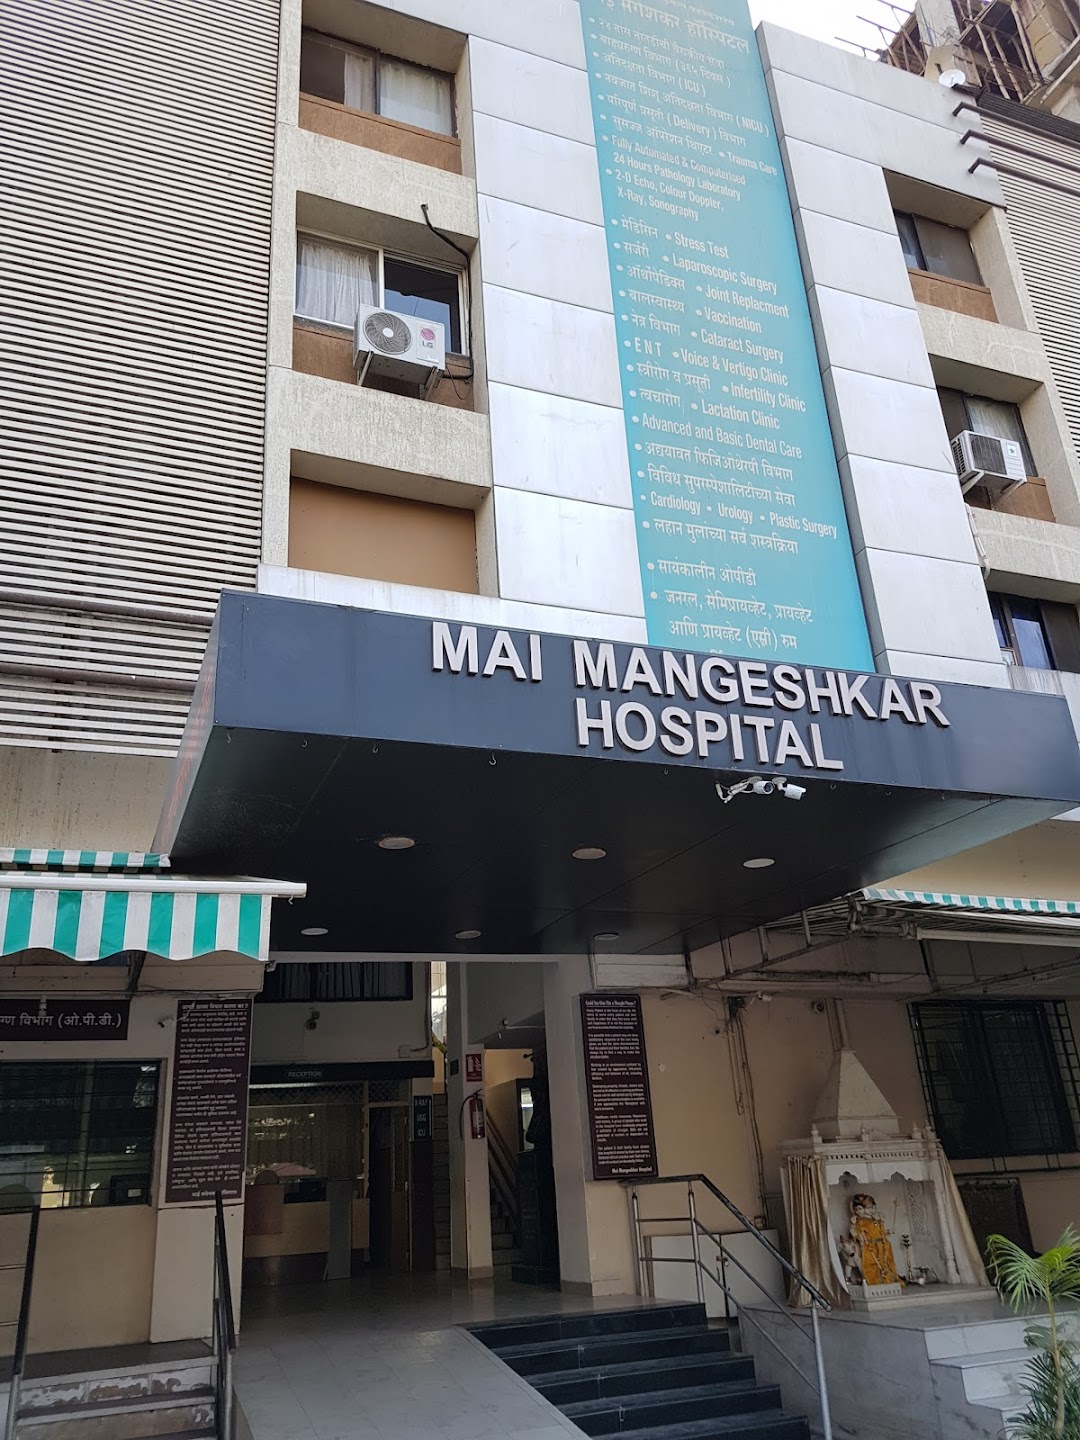 LMMF's Mai Mangeshkar Hospital photo